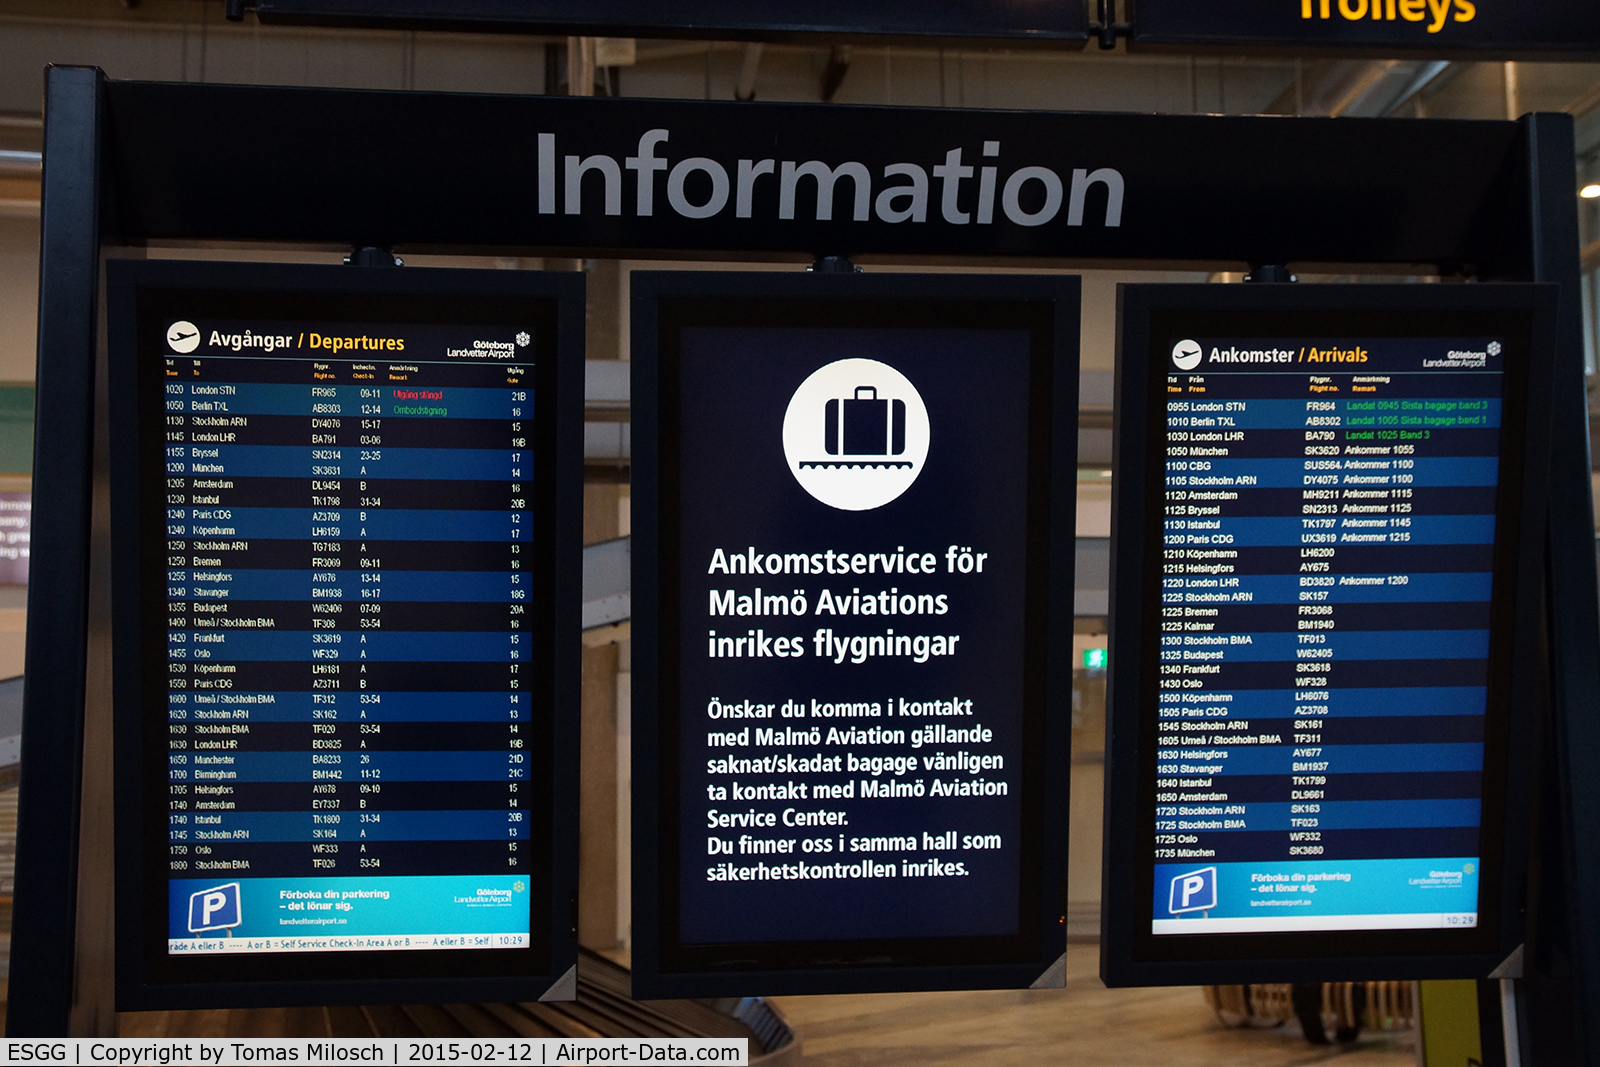 Göteborg-Landvetter Airport, Göteborg Sweden (ESGG) - Quite a lot of arrivals and departures ...